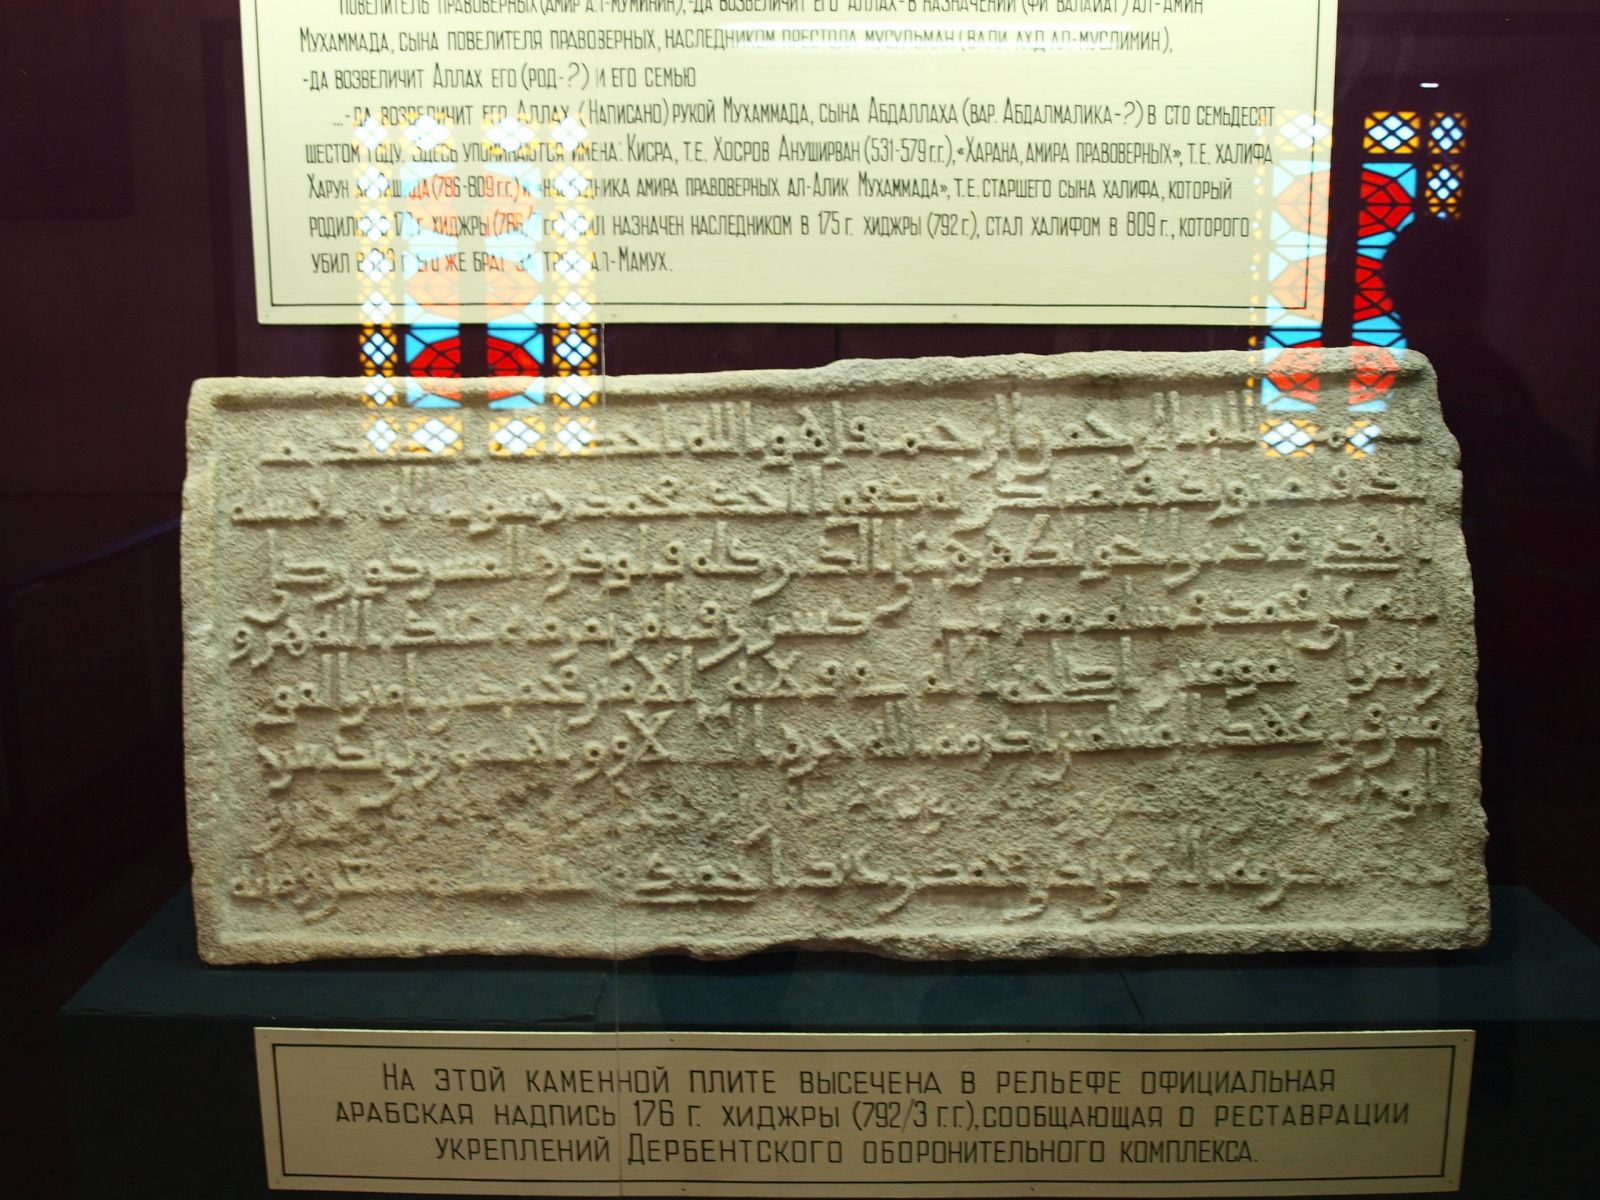 Памятный камень 176 г.х. в музее Дербента, фото 1